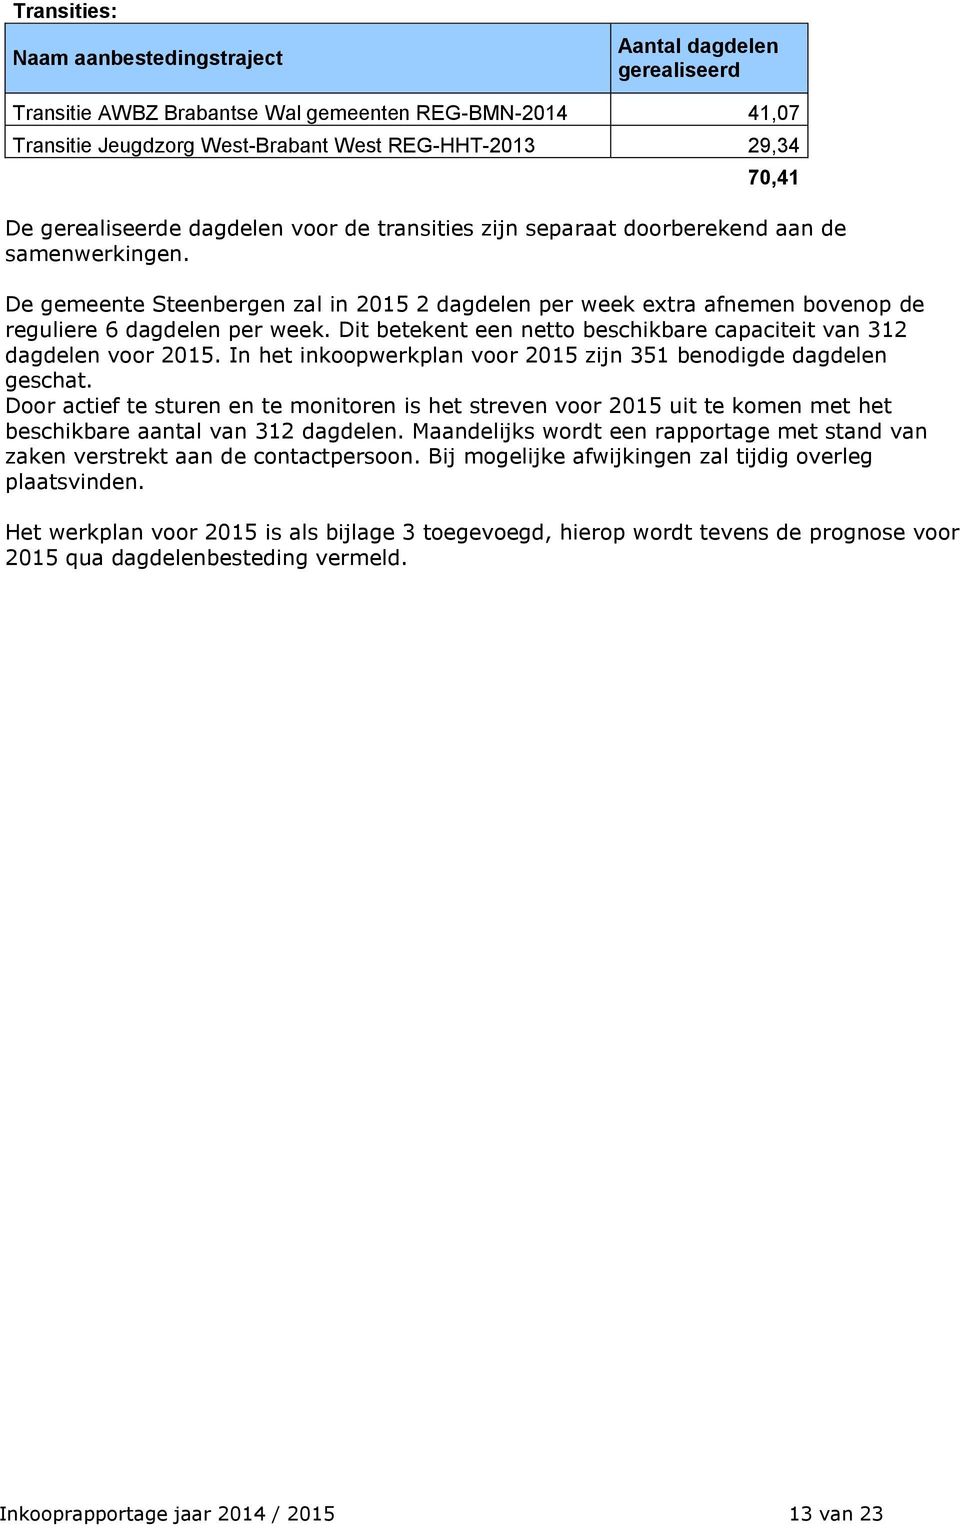 De gemeente Steenbergen zal in 2015 2 dagdelen per week extra afnemen bovenop de reguliere 6 dagdelen per week. Dit betekent een netto beschikbare capaciteit van 312 dagdelen voor 2015.